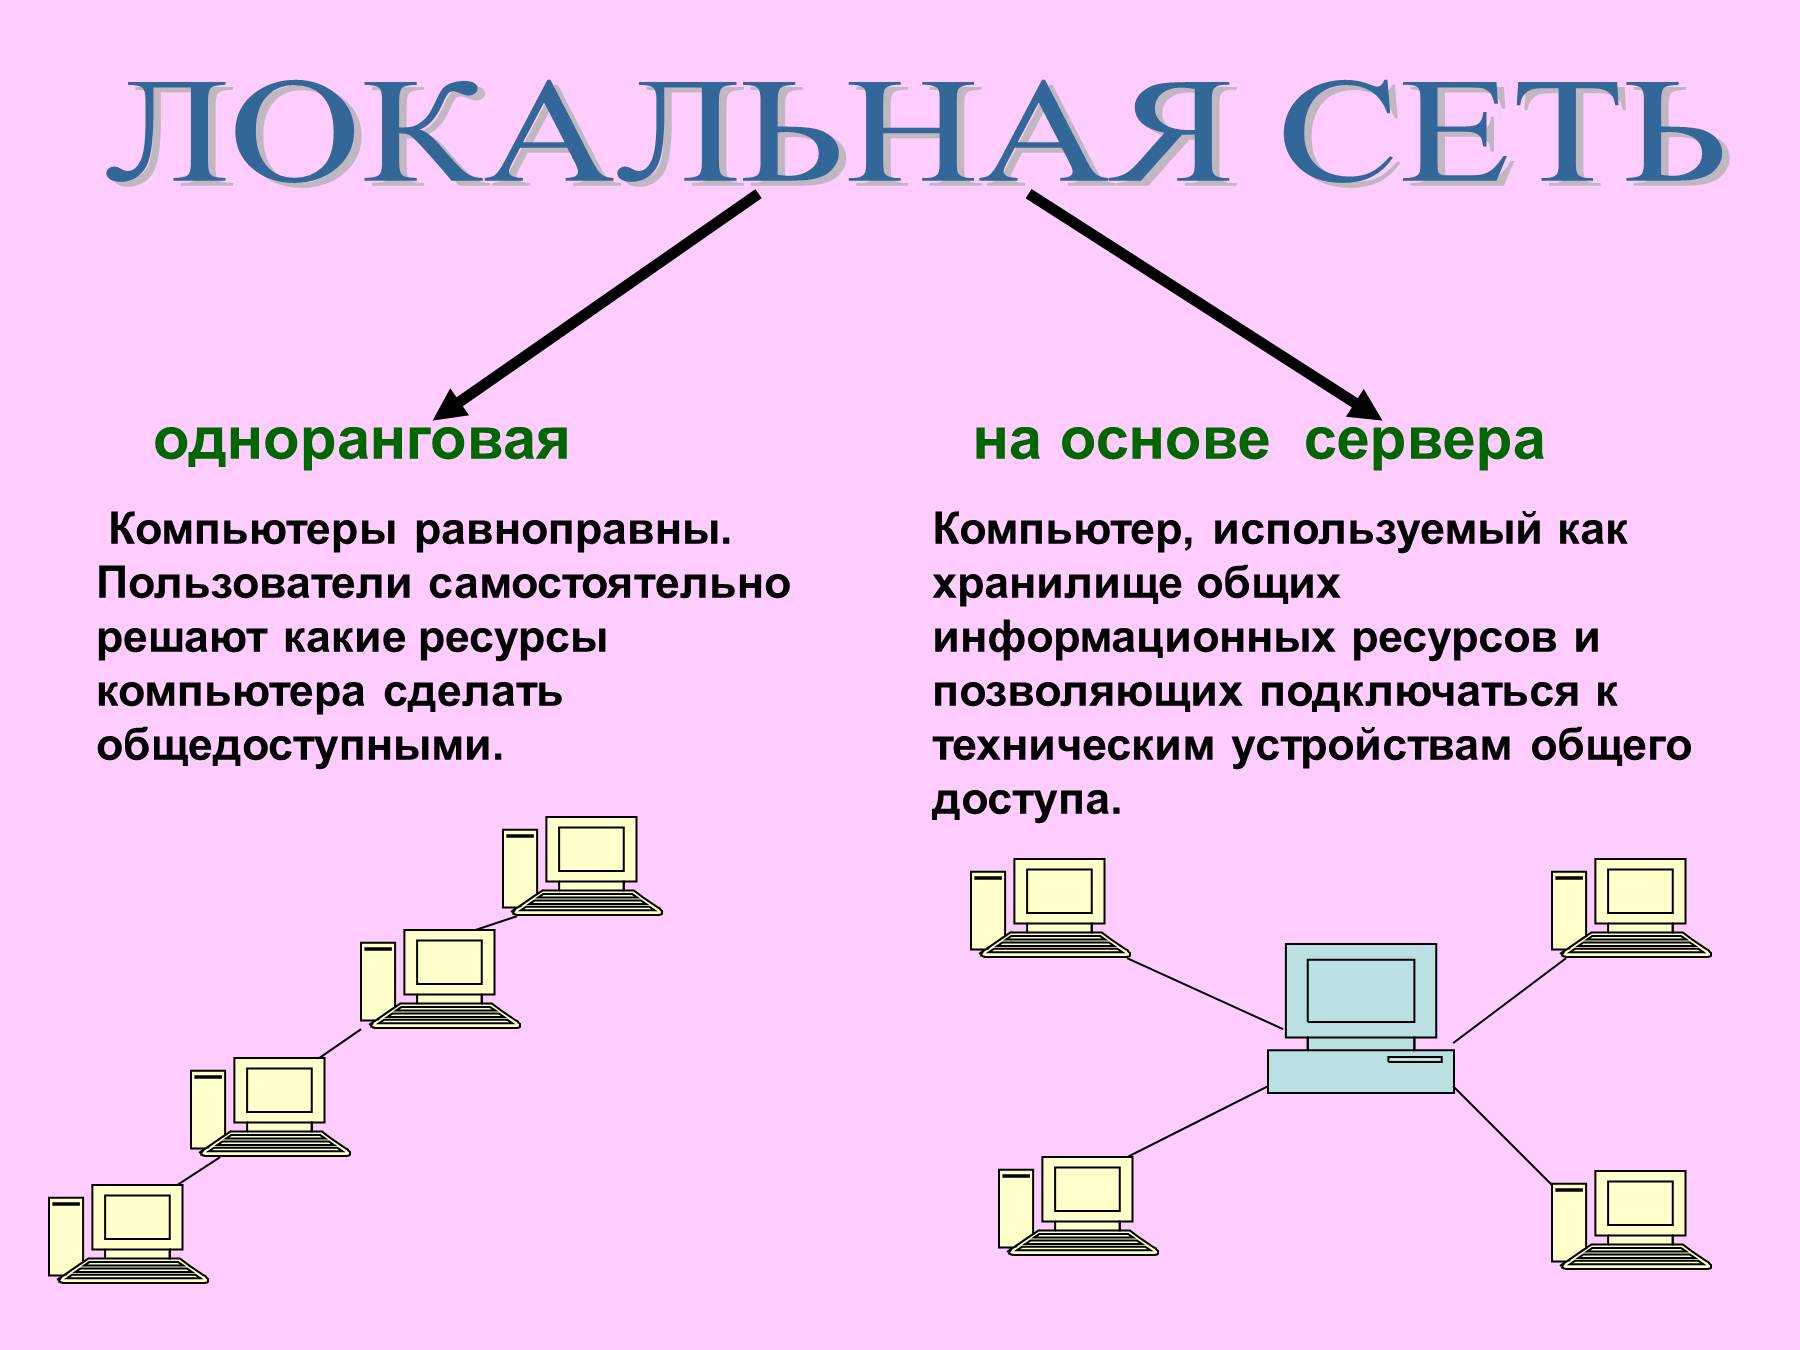 Виды сетей интернета. Одноранговая сеть и сеть с выделенным сервером. Одноранговая локальная сеть на основе сервера. Локальные одноранговые сети и сети с выделенным сервером. Одноранговая топология сети.